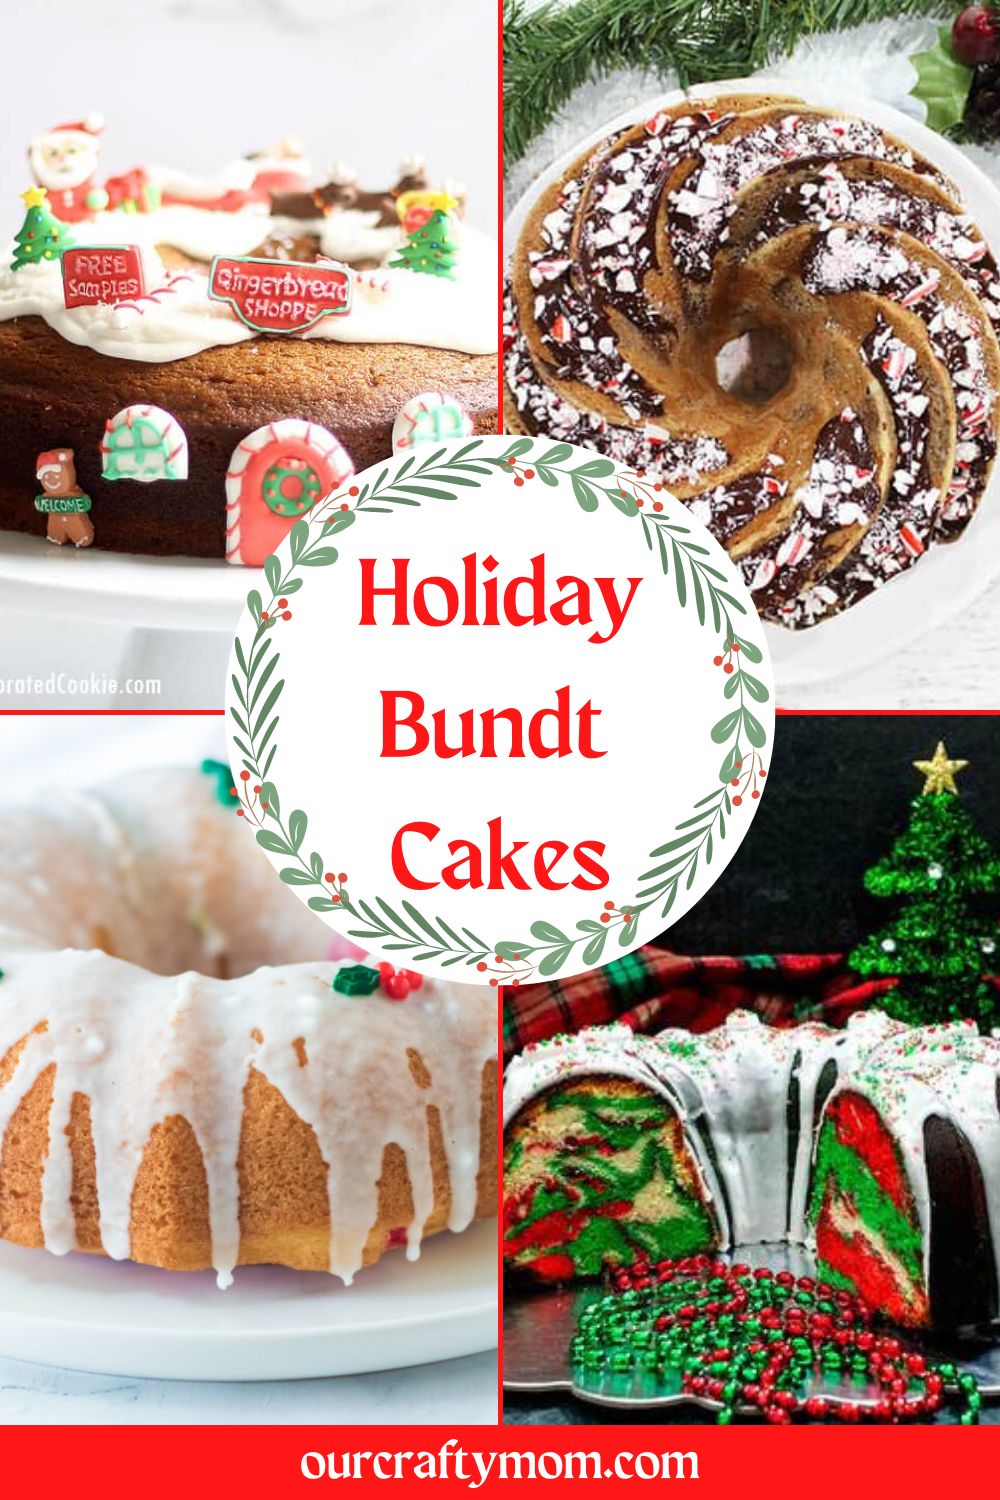 Holiday Bundt Cakes 5 Ways